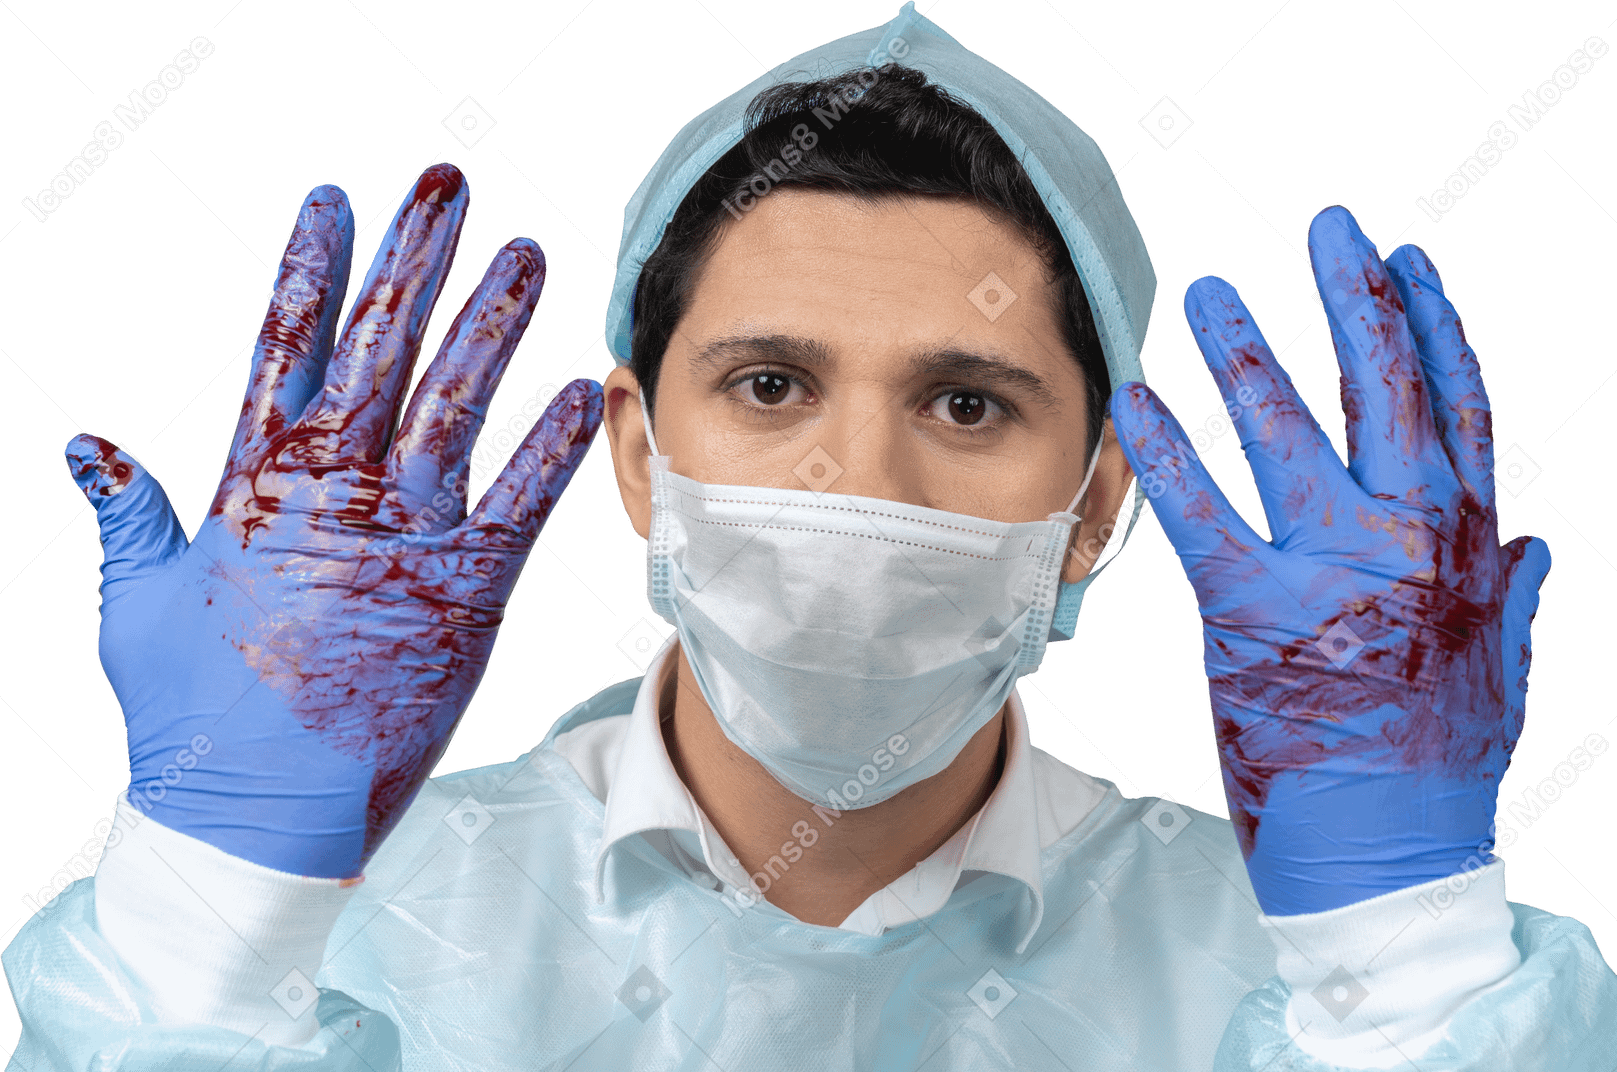 Dottore con guanti coperti di sangue